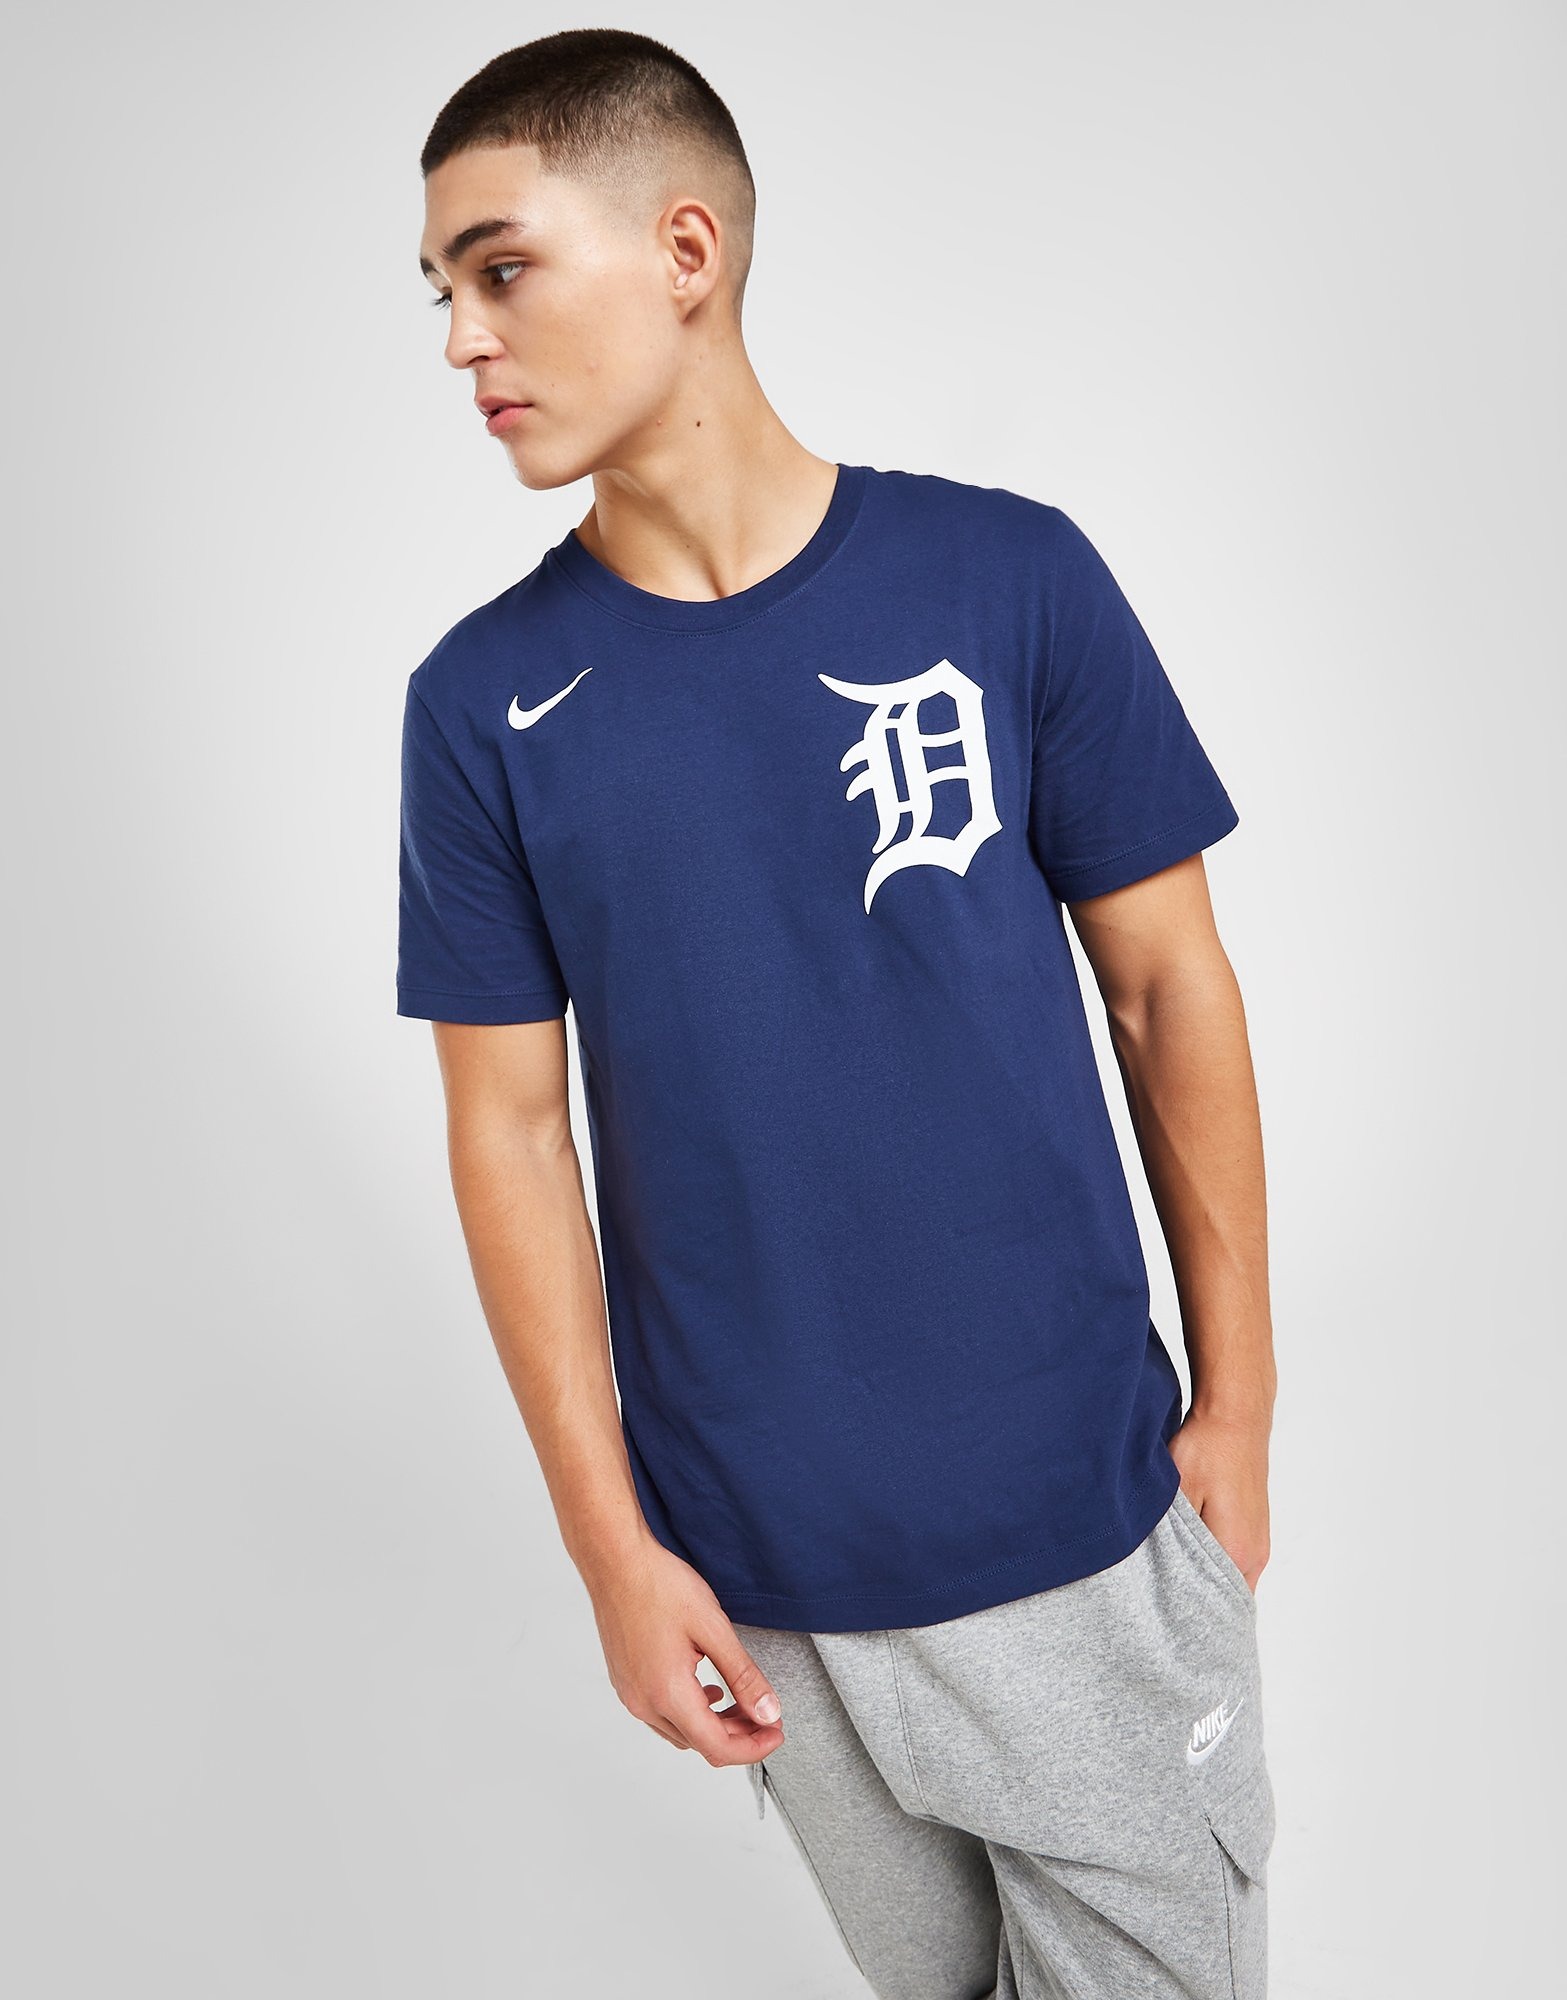 Blue Nike MLB Detroit Tigers T-Shirt - JD Sports Ireland